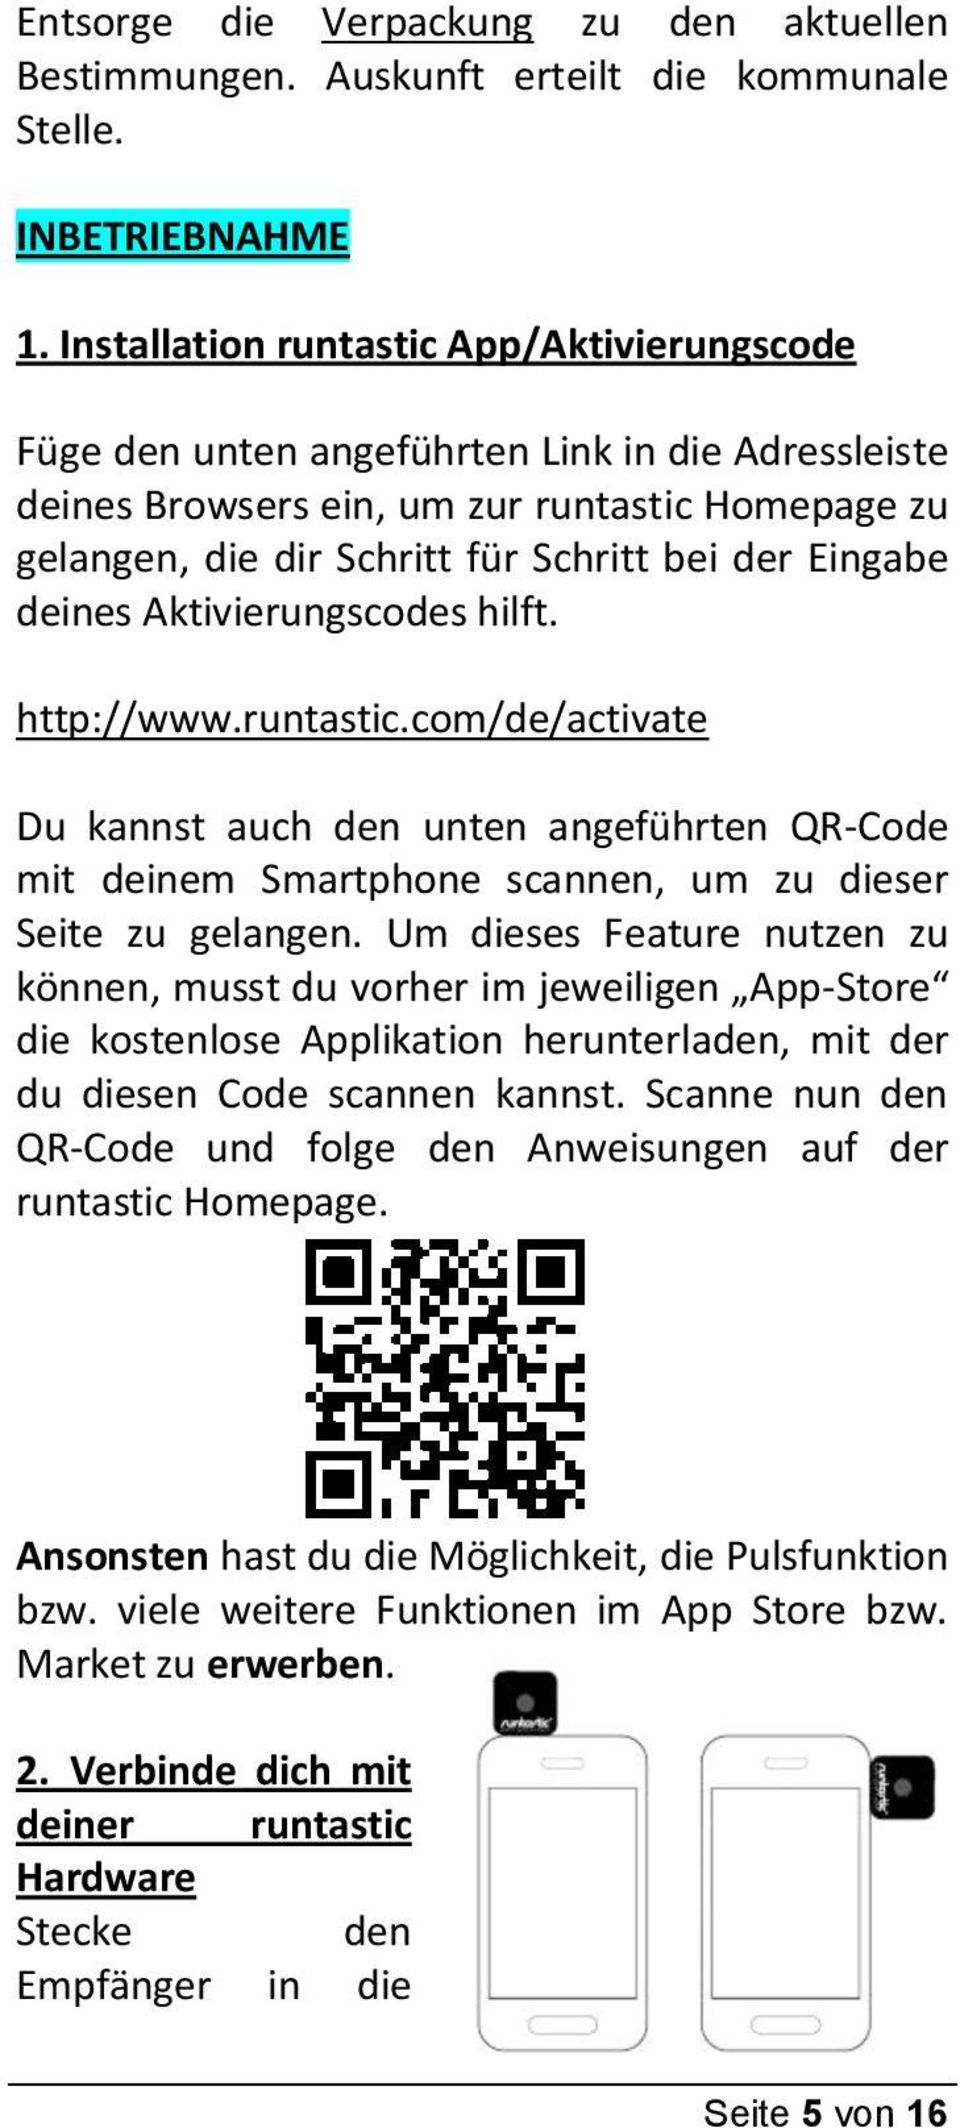 deines Aktivierungscodes hilft. http://www.runtastic.com/de/activate Du kannst auch den unten angeführten QR-Code mit deinem Smartphone scannen, um zu dieser Seite zu gelangen.